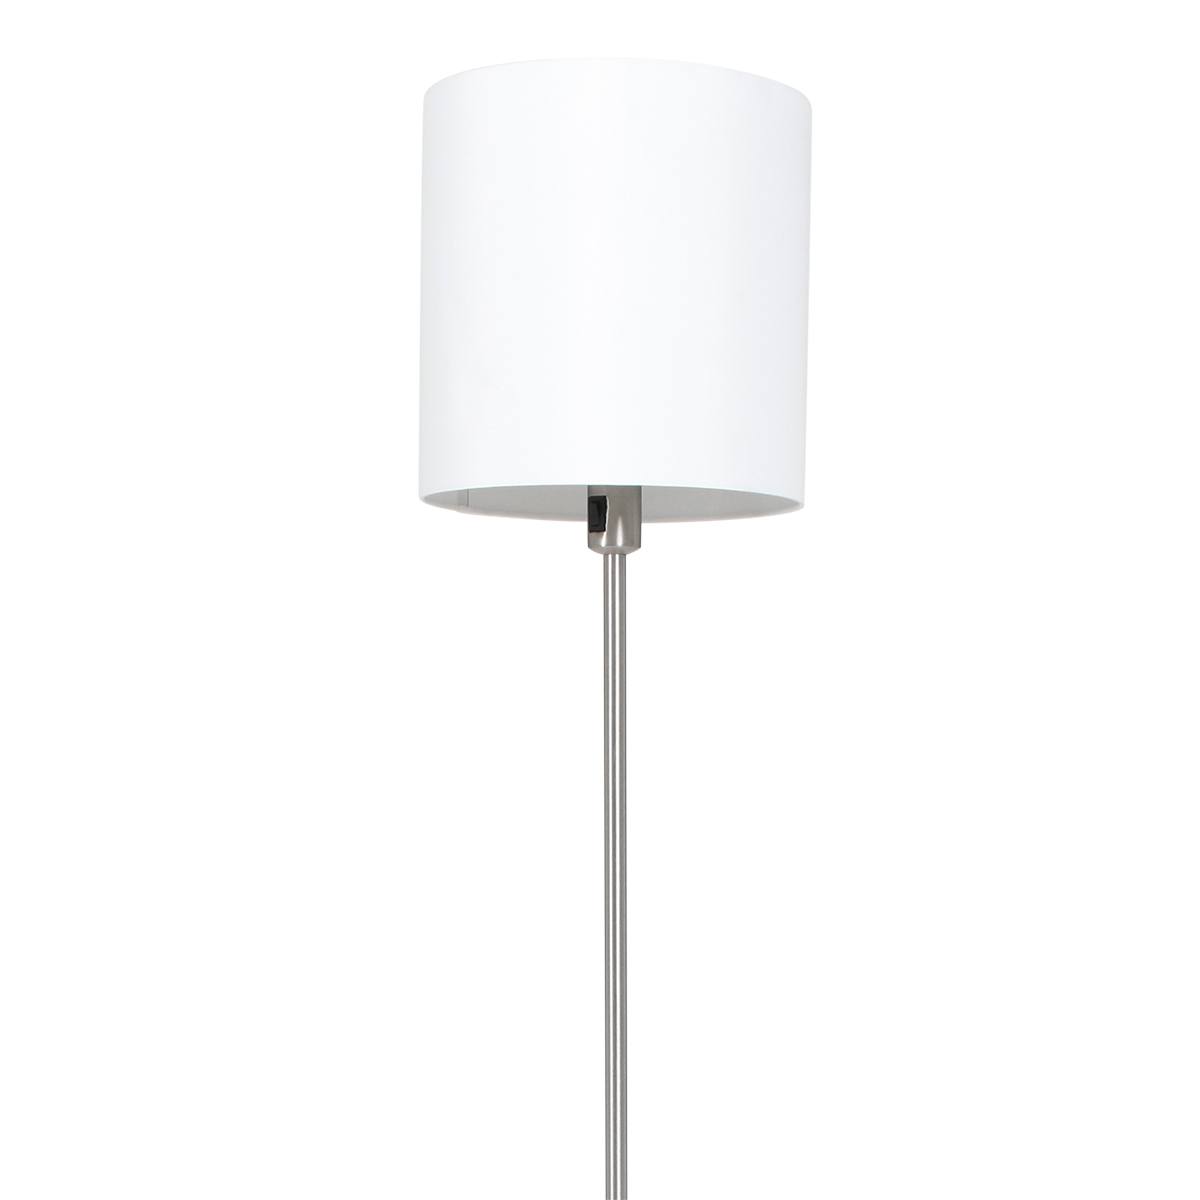 Vloerlamp, staal inclusief witte linnen kap, 160 cm hoog, Noor, 1564ST, De lamp is te bedienen met schakelaar op het armatuur. - 1564ST Webo Verlichting